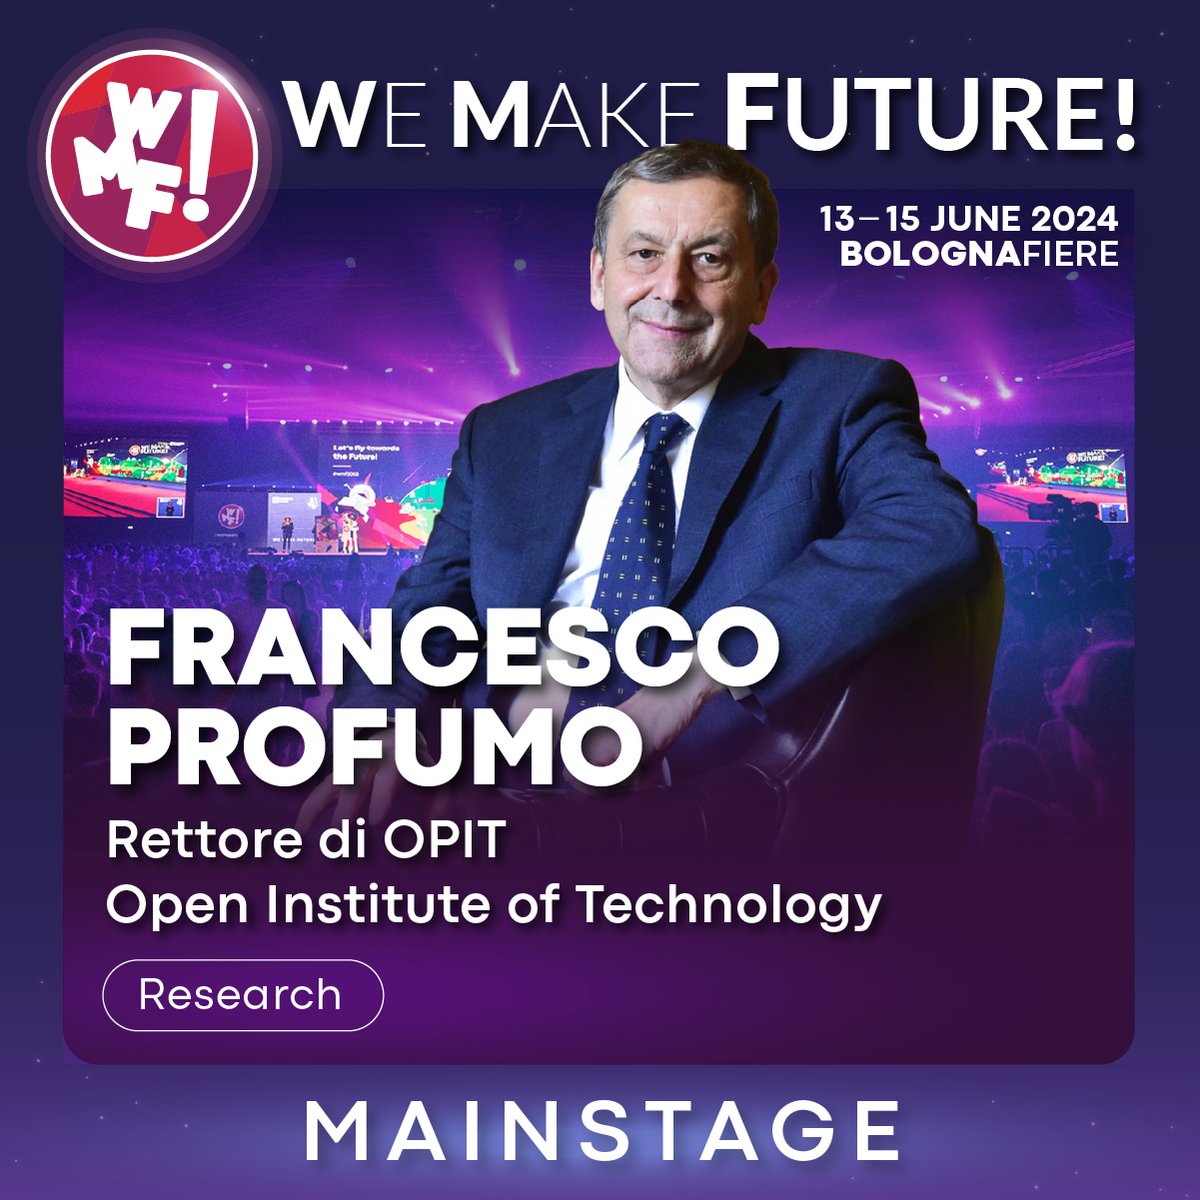 Al #WMF2024 Francesco Profumo, Rettore di OPIT ed ex Ministro dell’Istruzione, ci parlerà di lavoro e competenze, e di come come l'Italia si stia trasformando nell'era digitale. bit.ly/WMF2024_Mainst… #WeMakeFuture, dal 13 al 15 giugno, BolognaFiere.